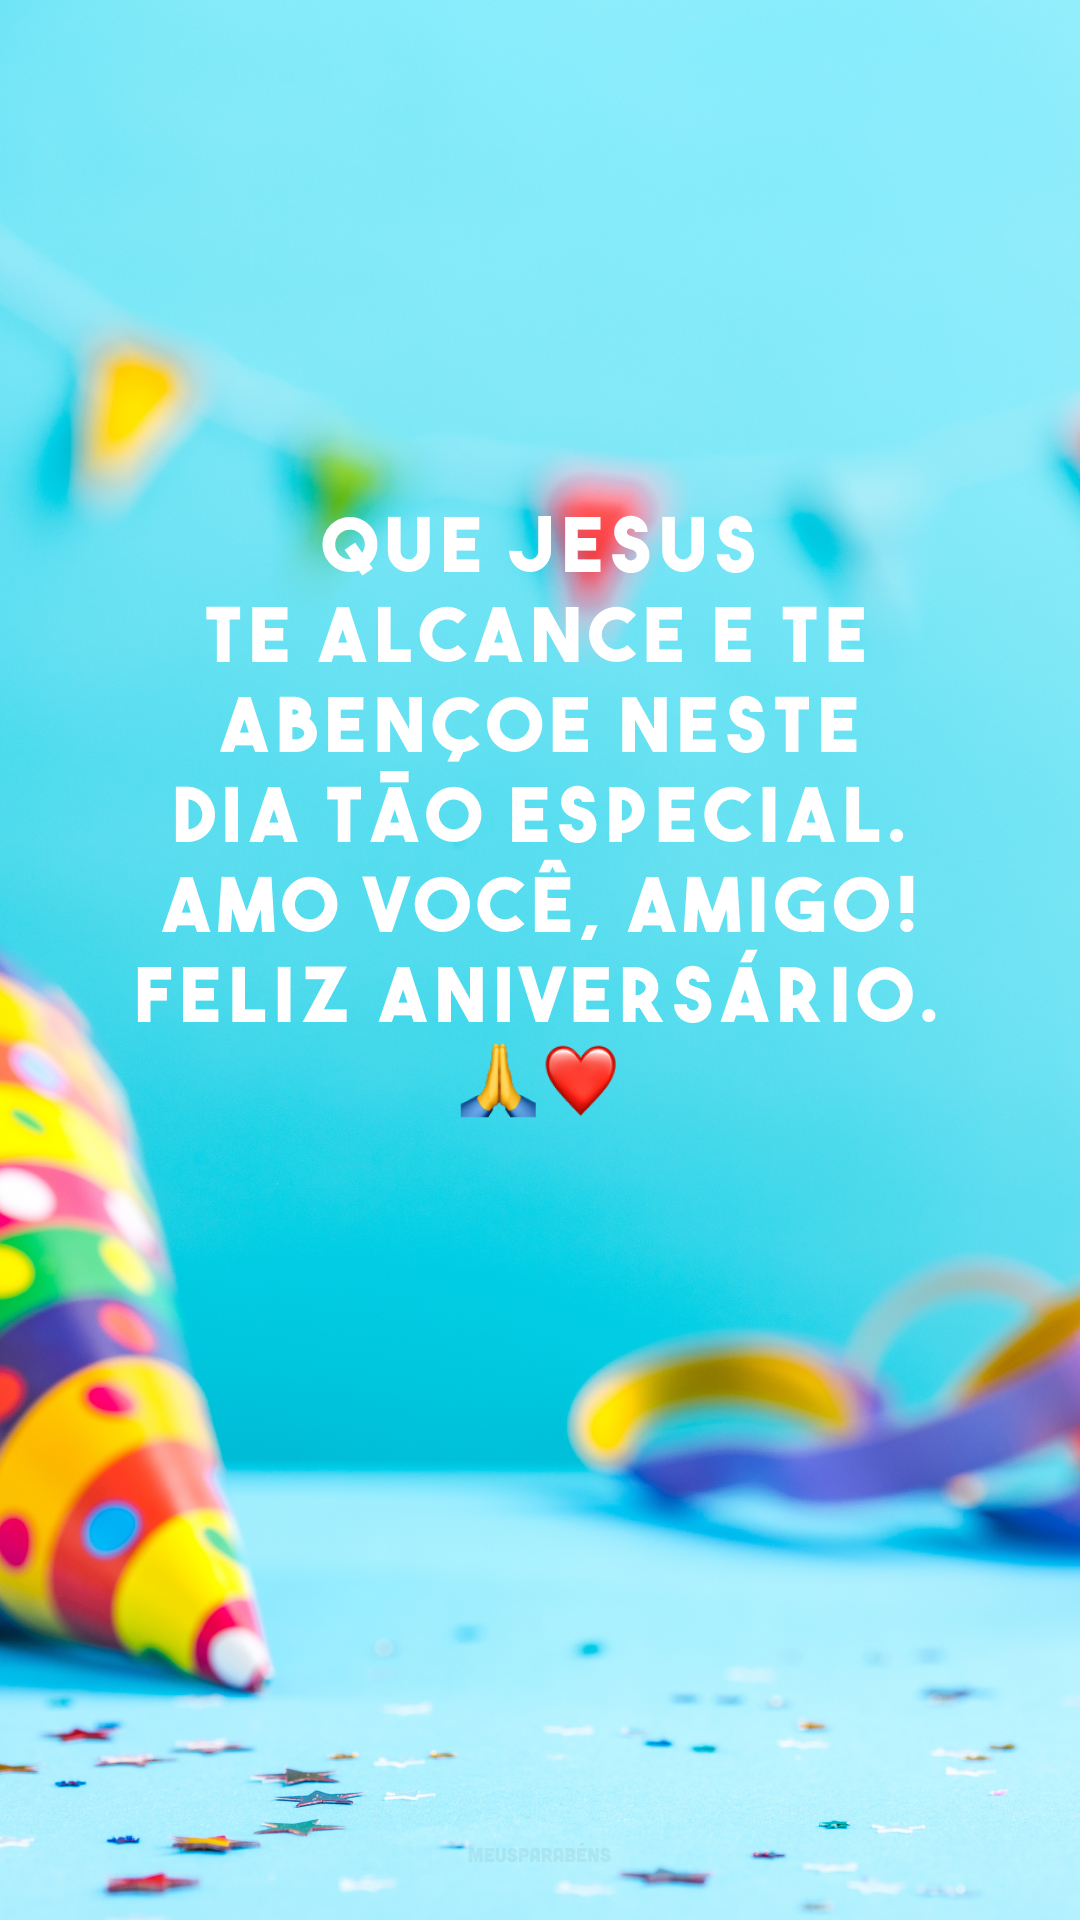 Que Jesus te alcance e te abençoe neste dia tão especial. Amo você, amigo! Feliz aniversário. 🙏❤